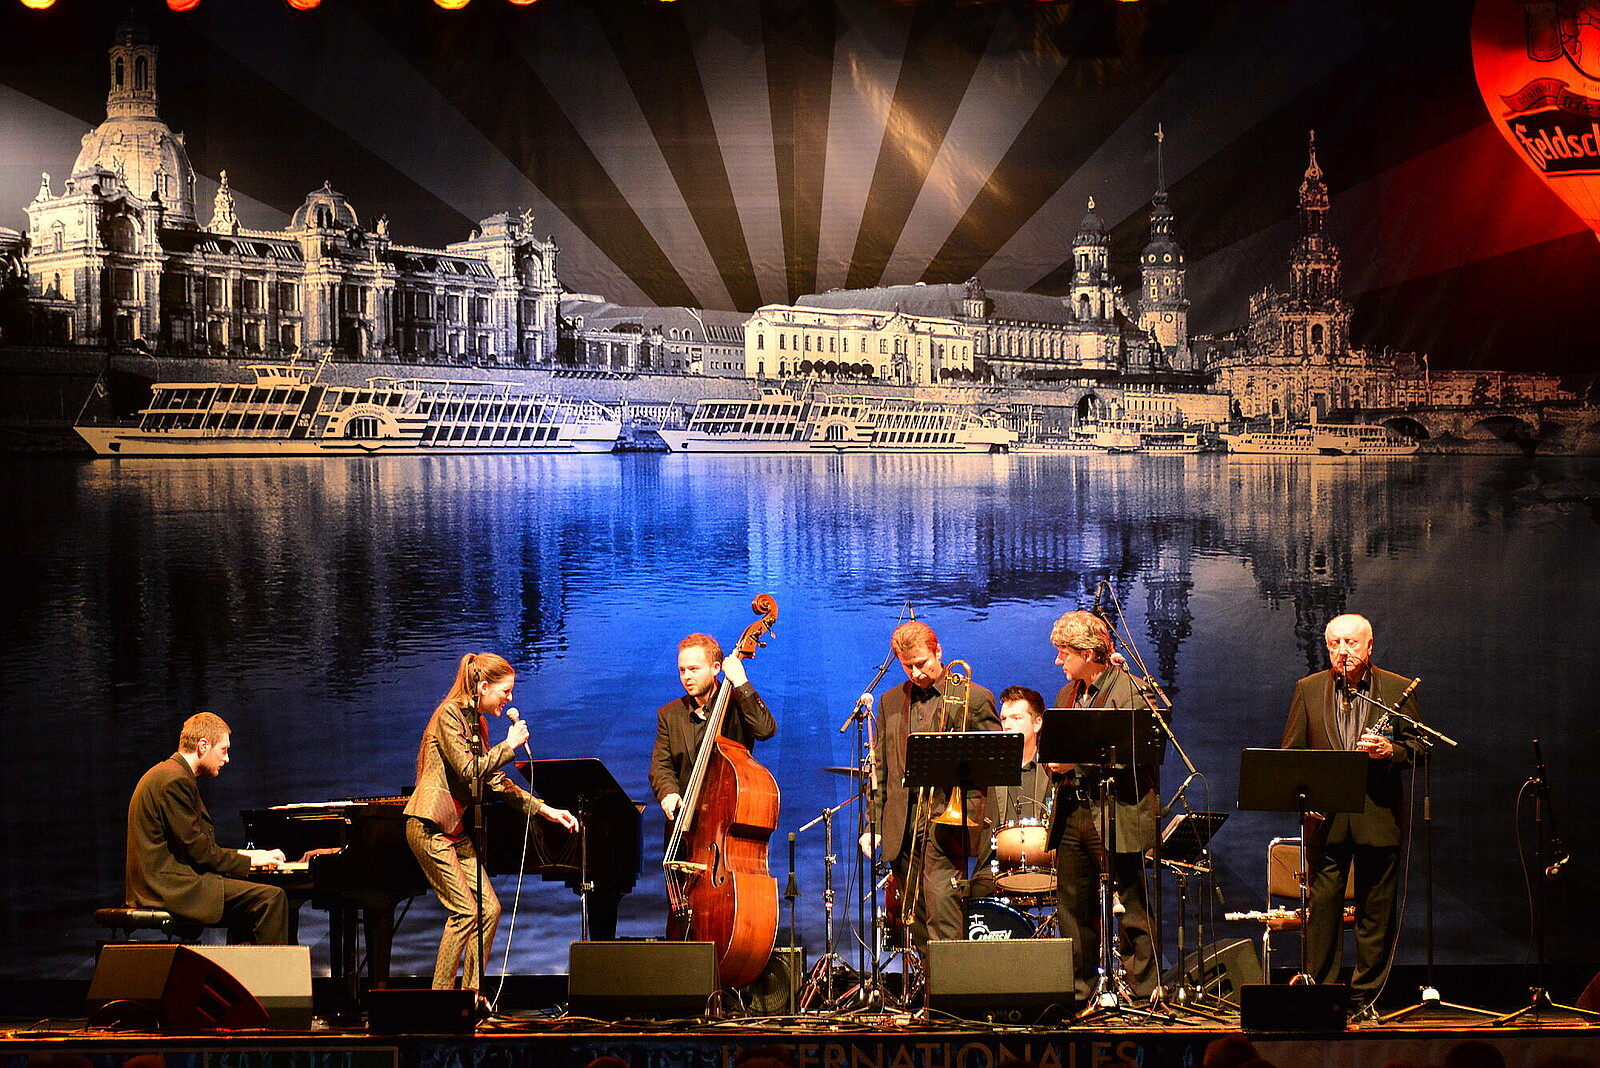 Der Jazz kommt ursprünglich aus den USA. In Dresden wurde er zu einem Volksfest und zahlreiche Gäste kommen zum Internationalen Dixieland-Festival nach Sachsen.